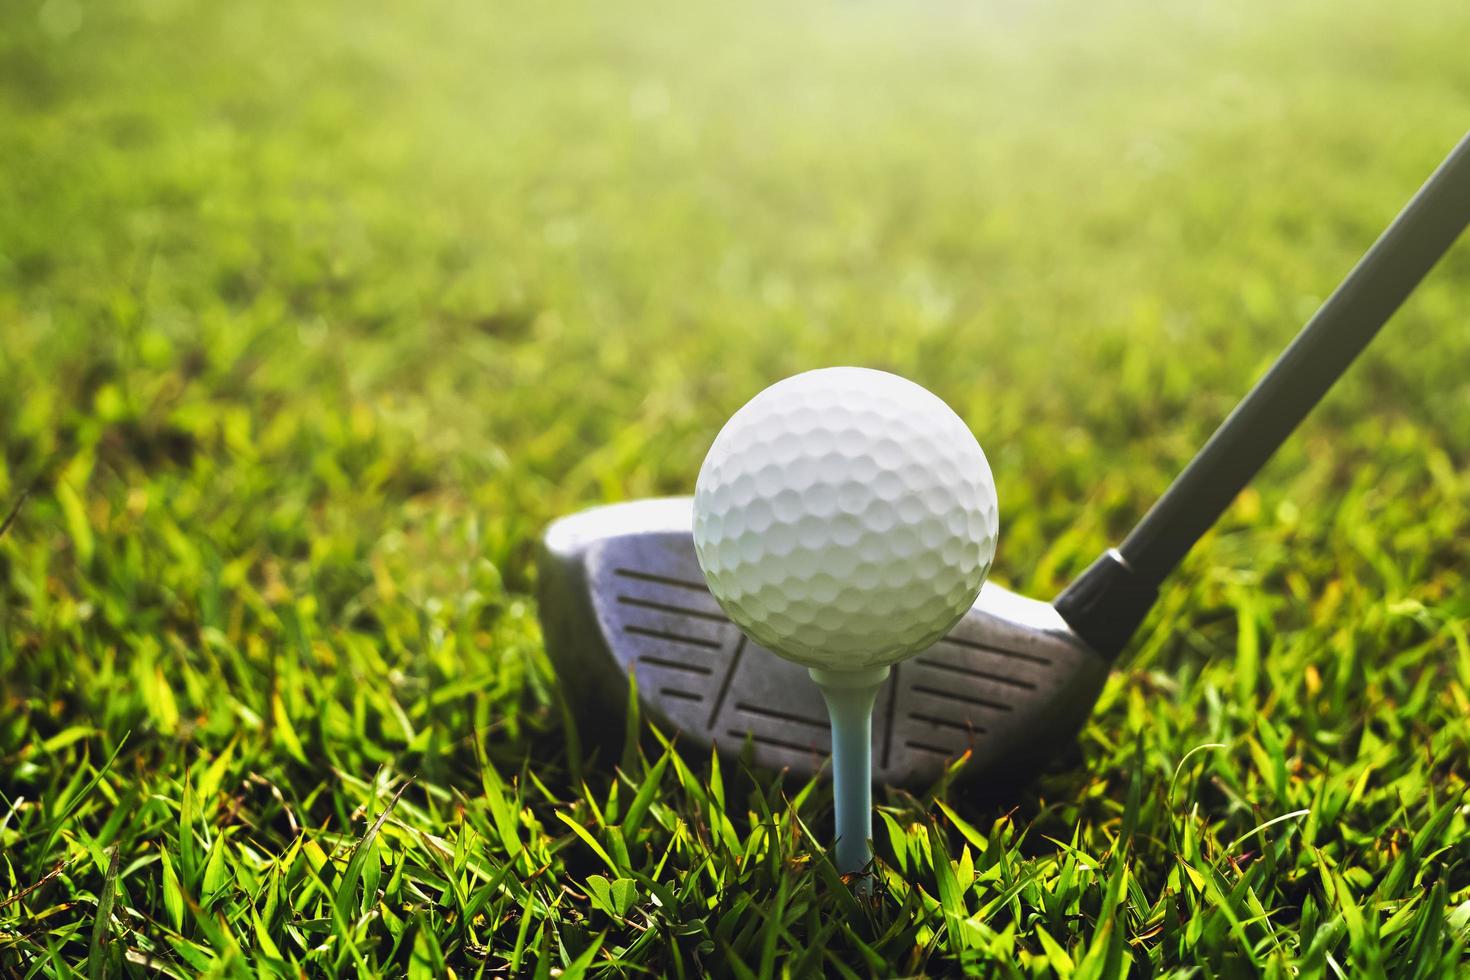 clube de golfe closeup e bola de golfe na grama verde foto